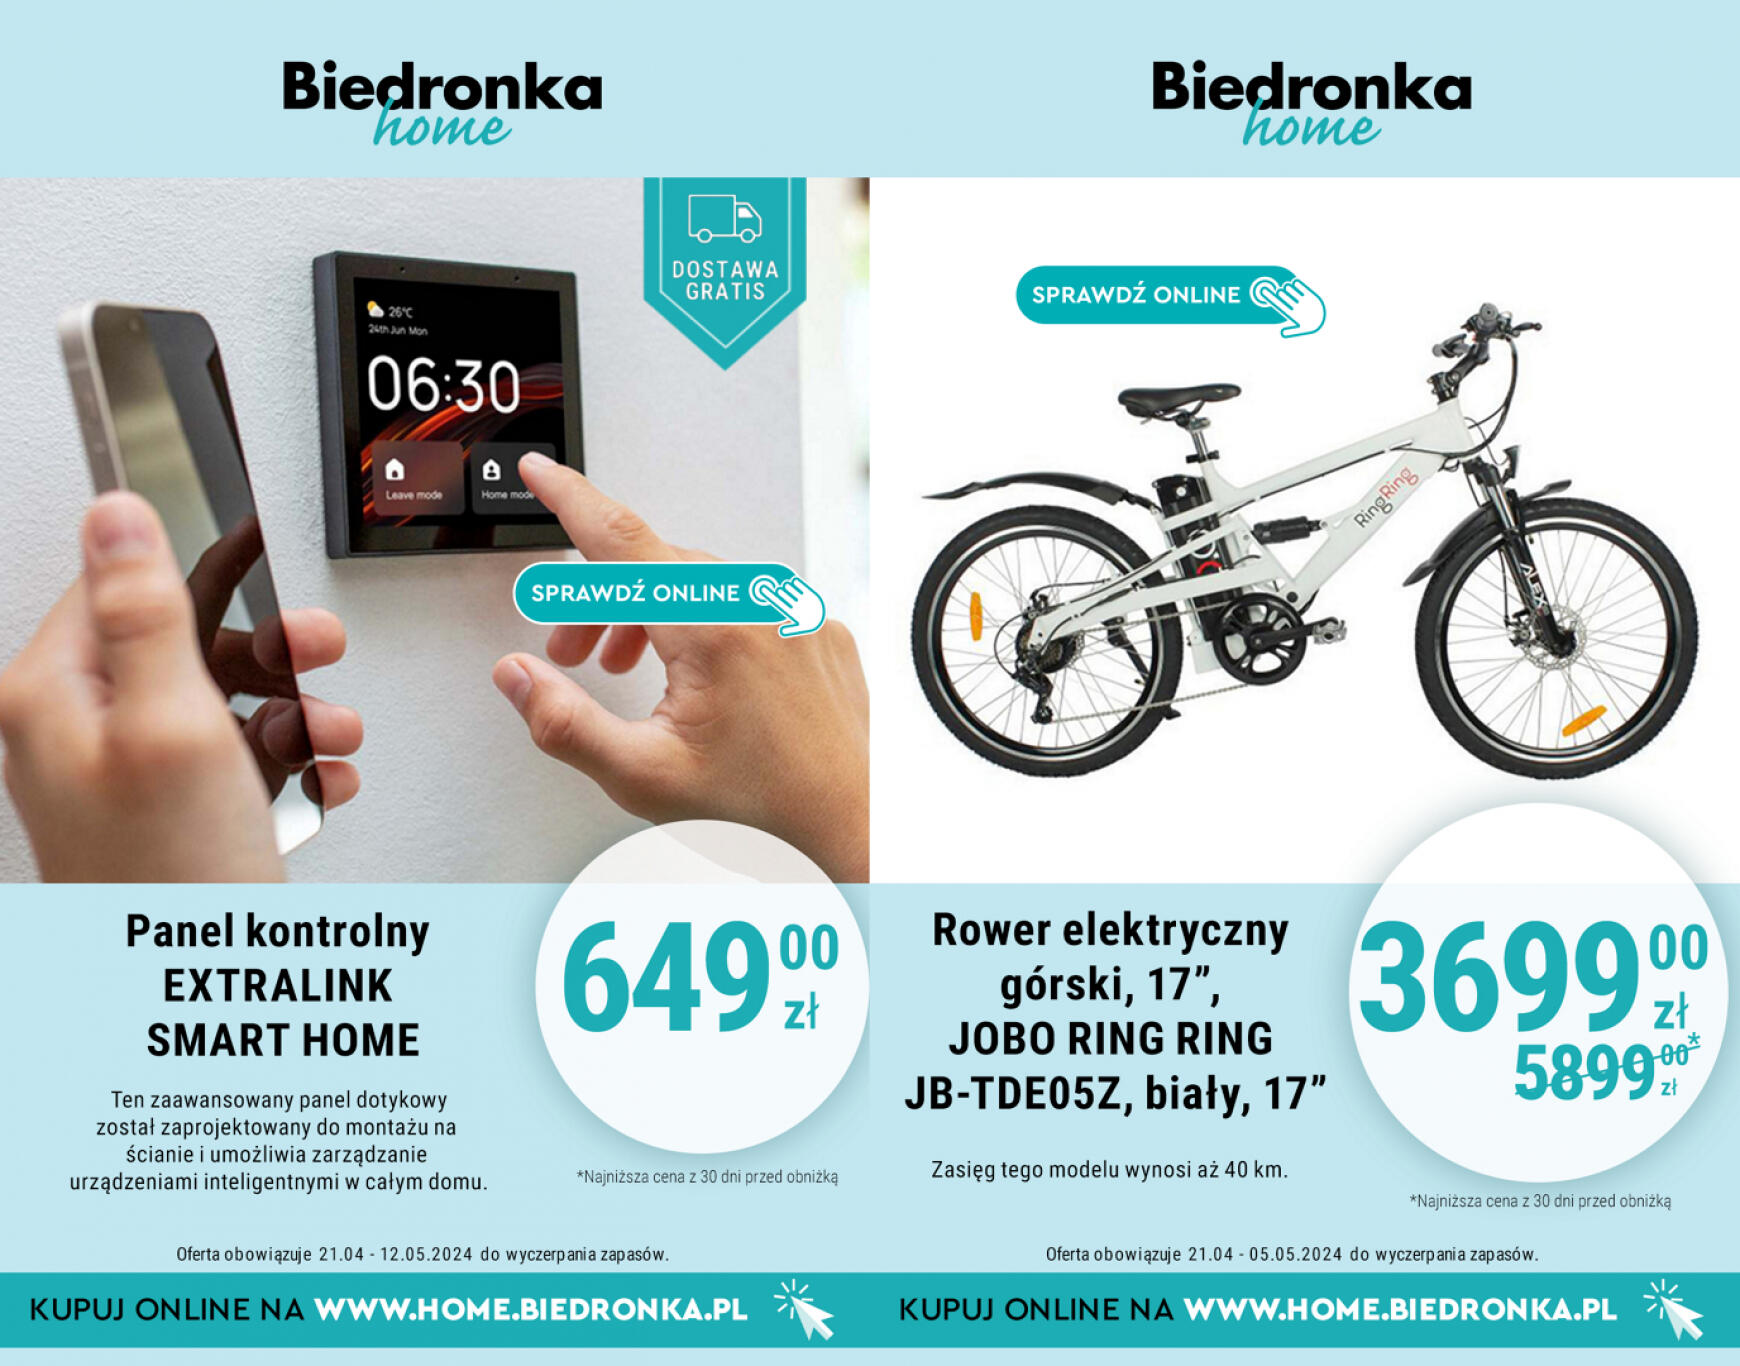 biedronka - Biedronka Home gazetka aktualna ważna od 21.04. - 12.05. - page: 2